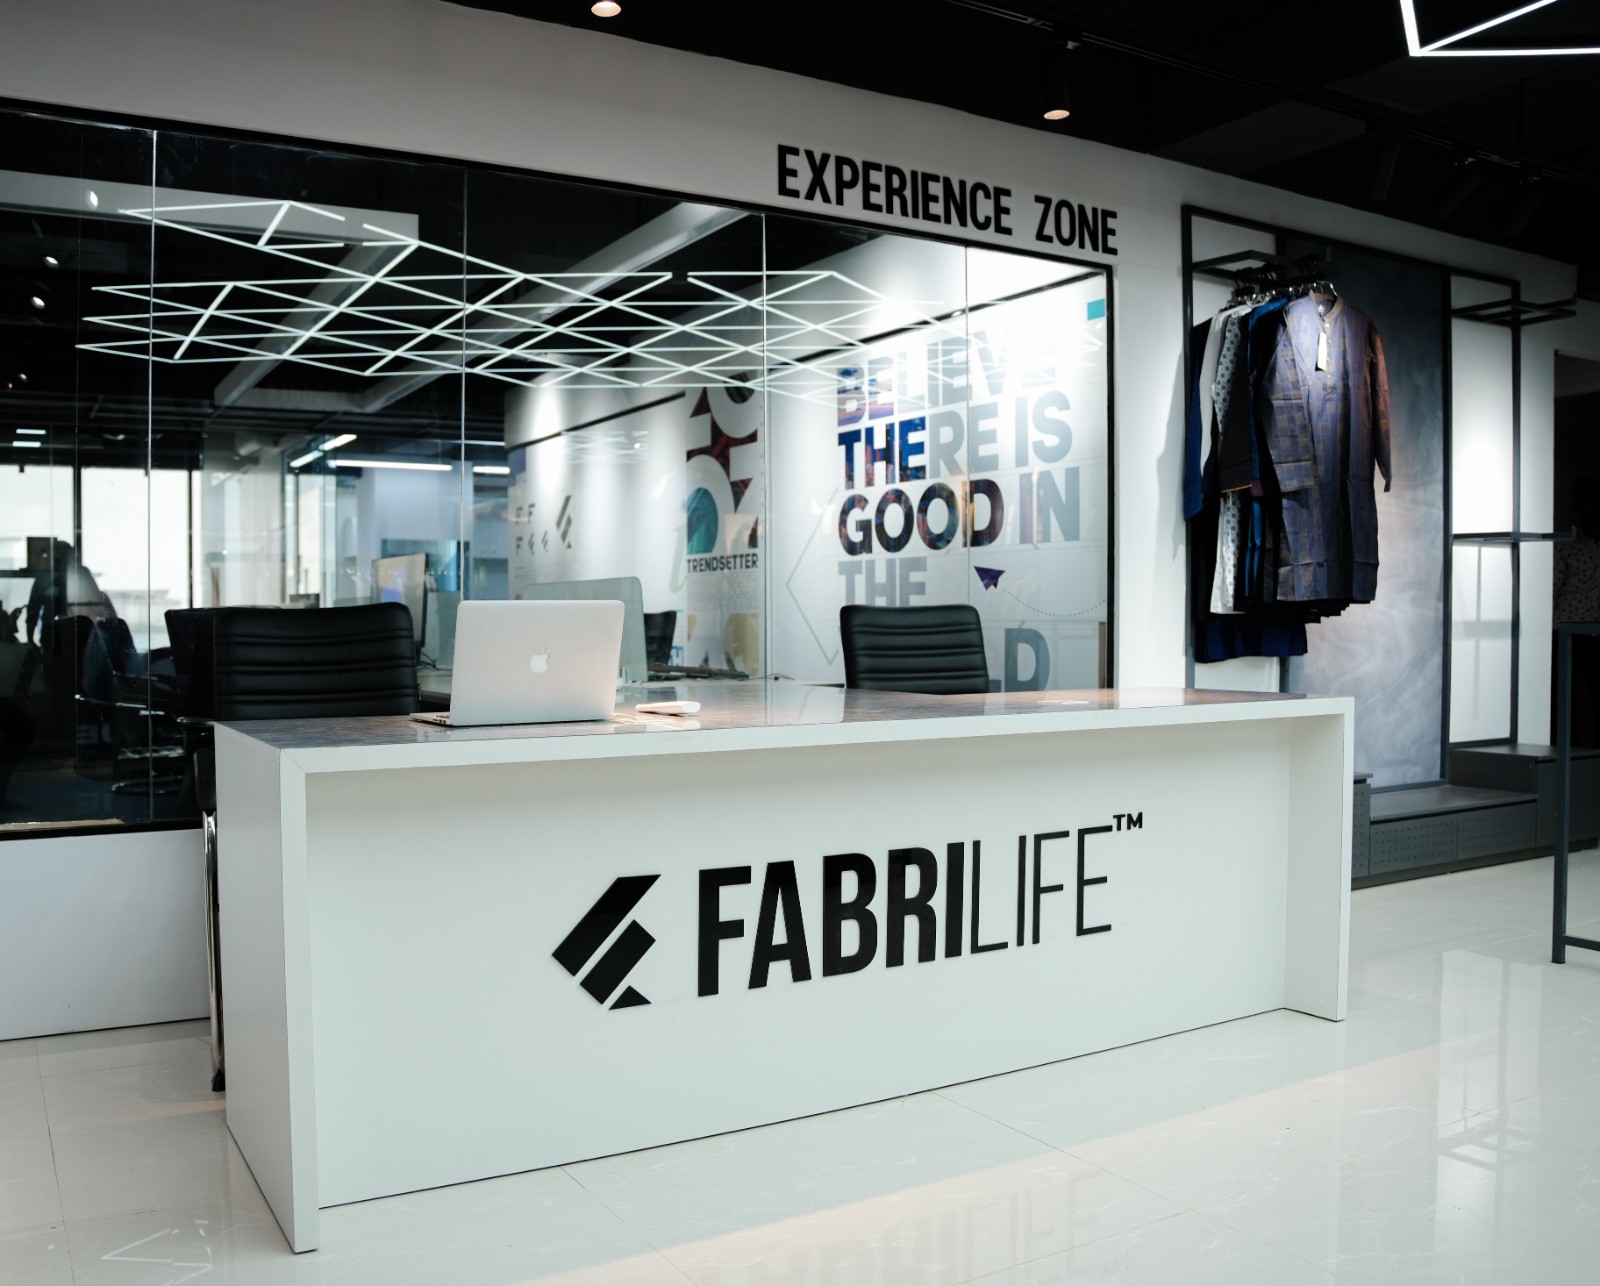 "Fabrilife" an emerging fashion brand